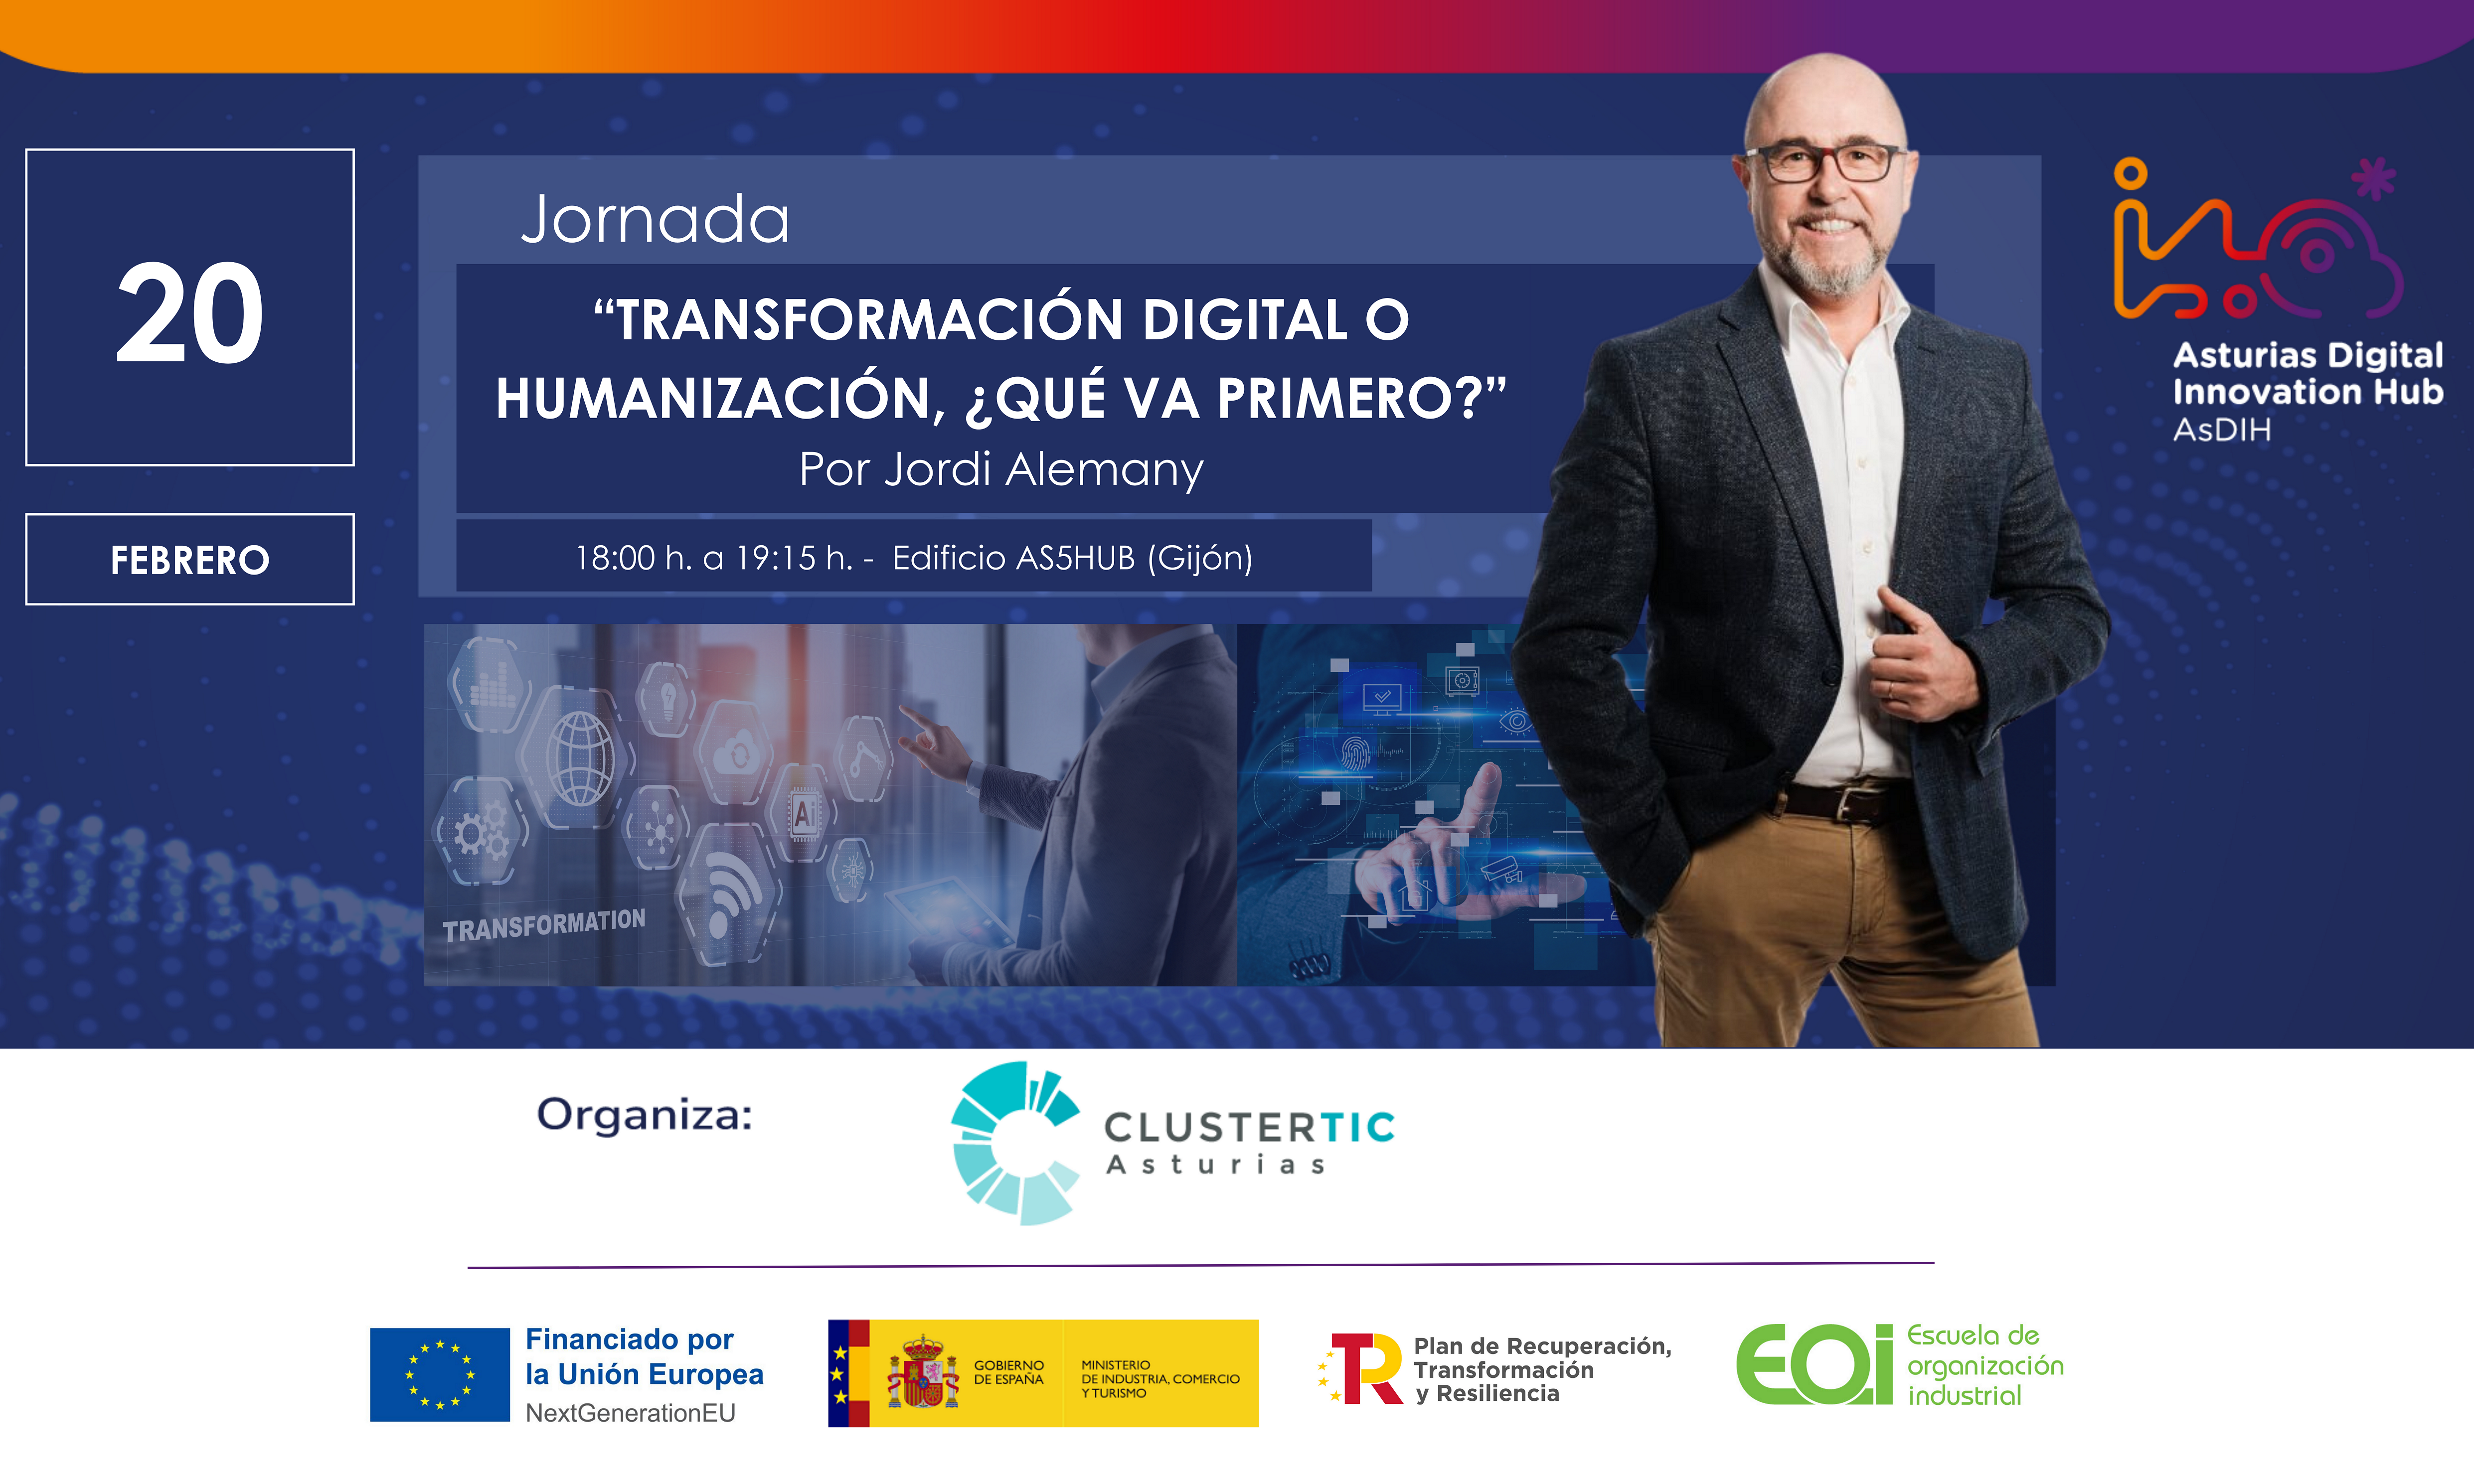 "Transformación digital o humanización, ¿qué va primero?" con Jordi Alemany